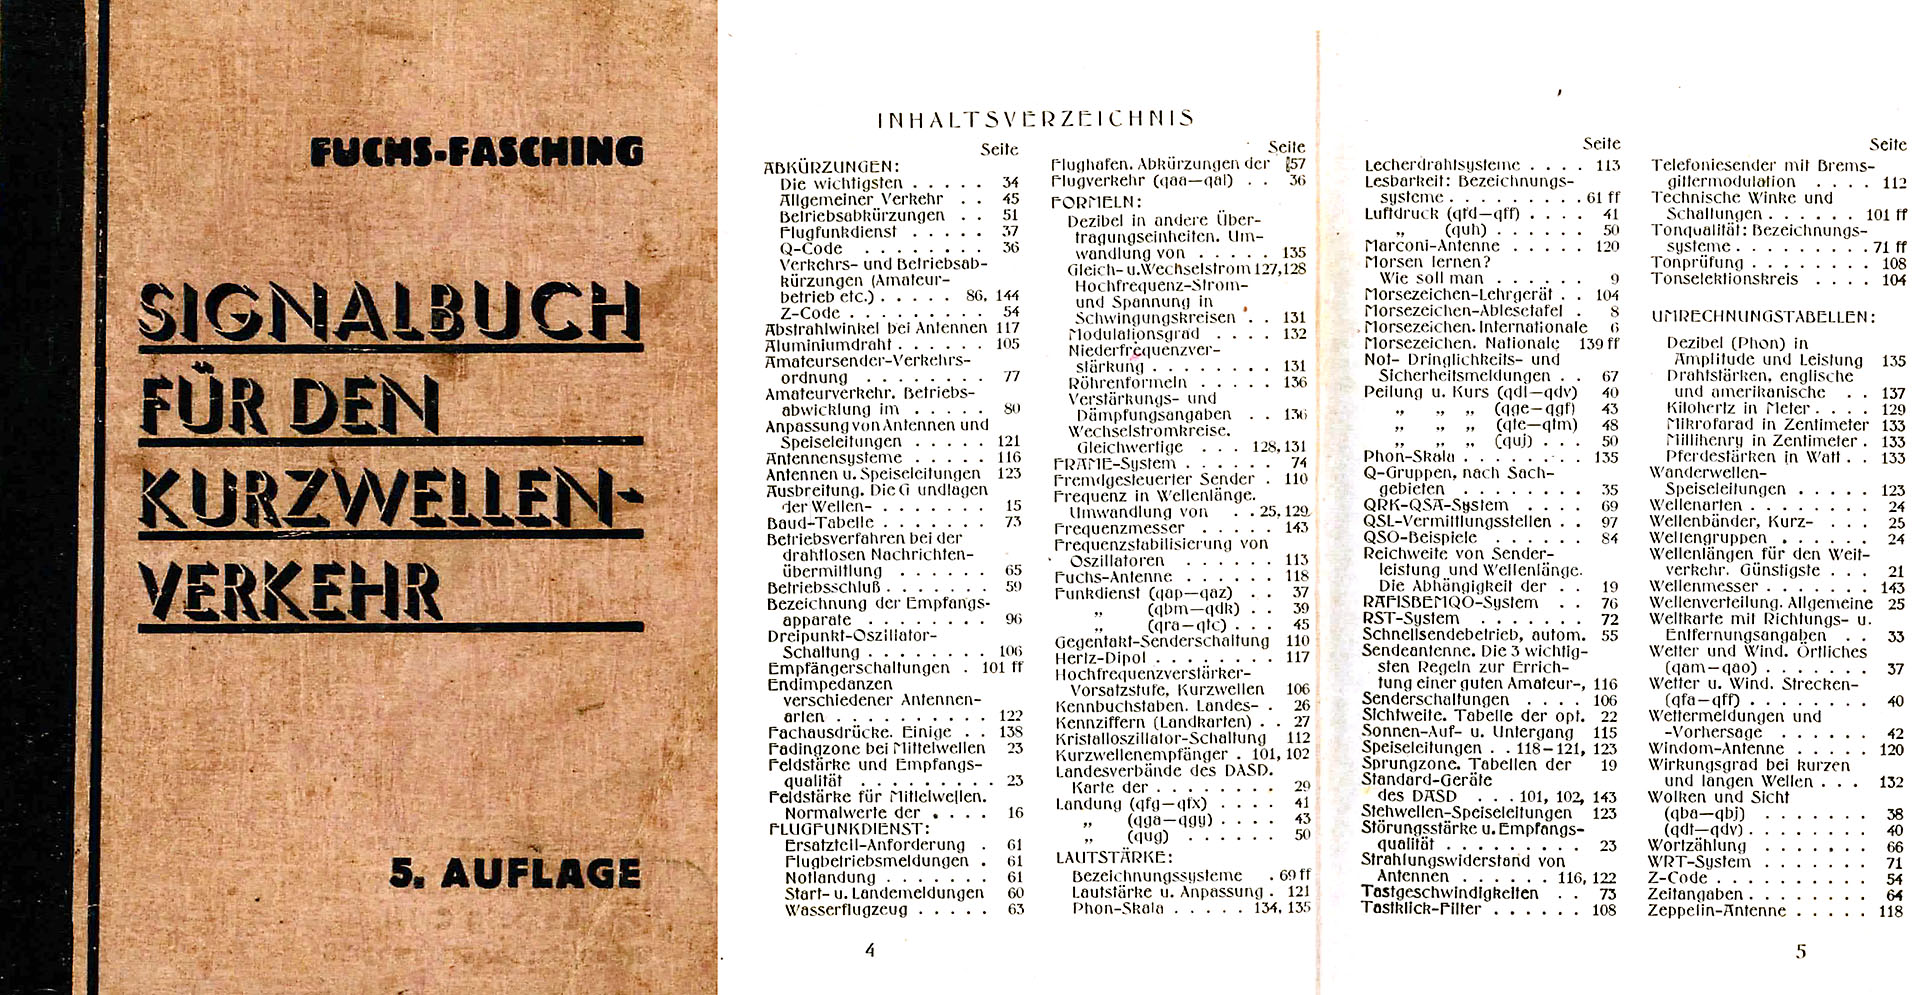 Signalbuch für den Kurzwellenverkehr - Fuchs, J / Fasching, J.